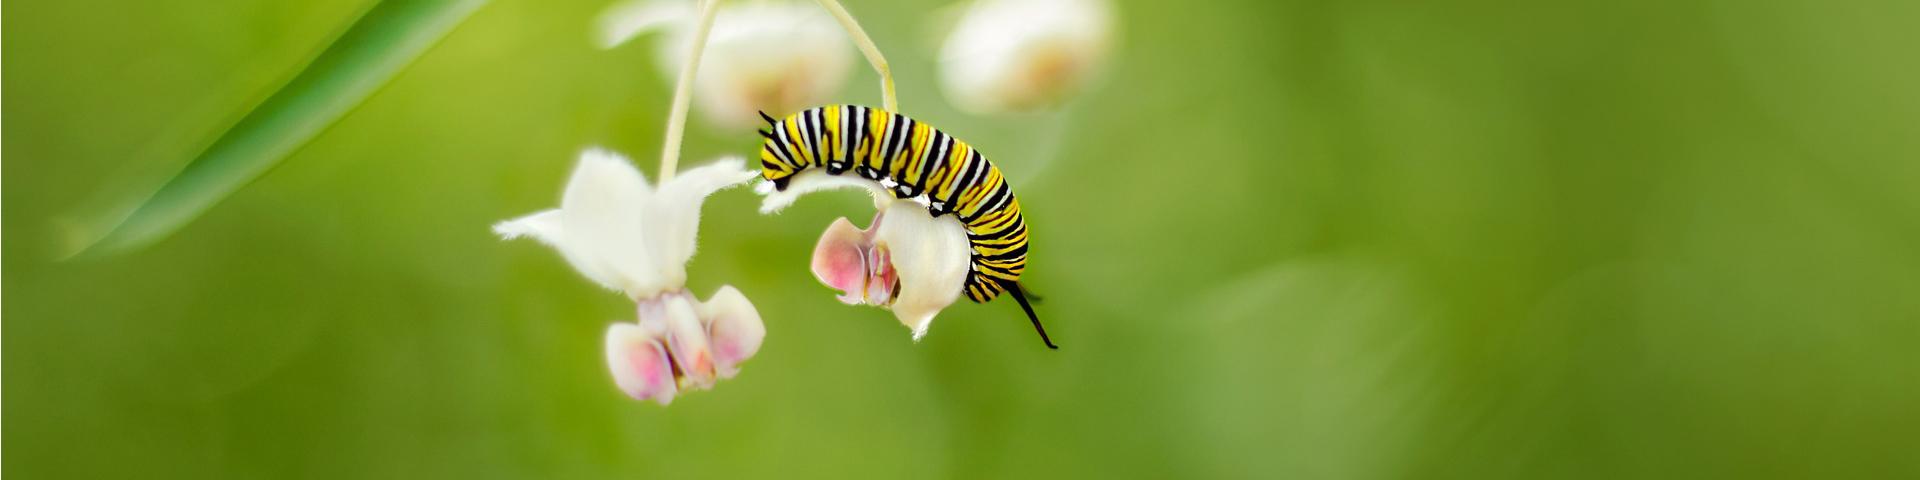 monarch caterpillar homepage header 